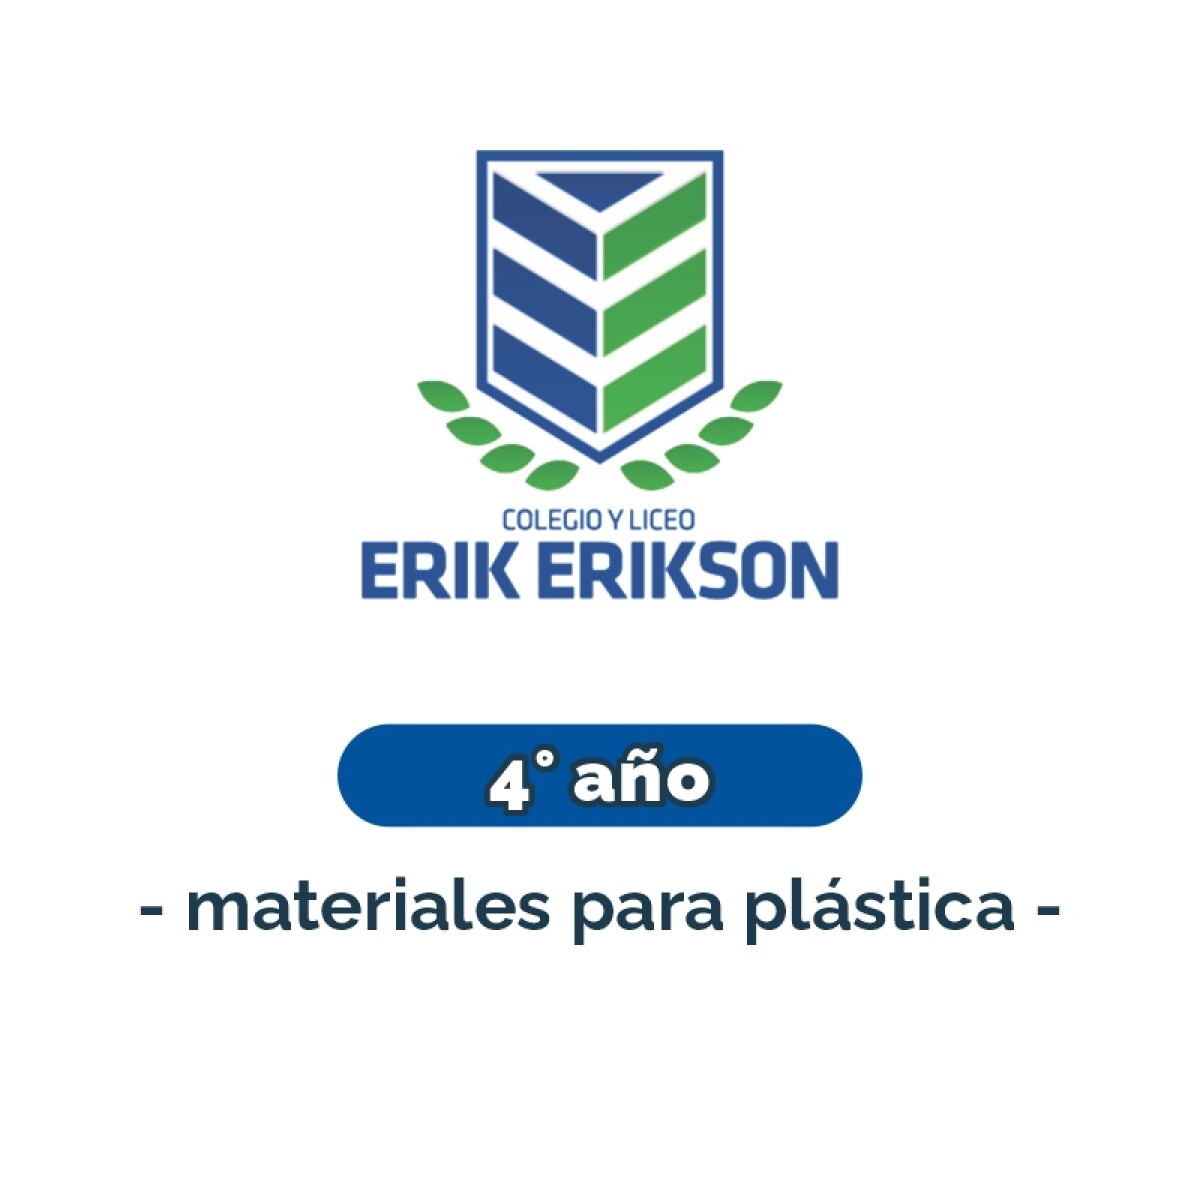 Materiales para plástica - Primaria 4° año Erik Erikson 